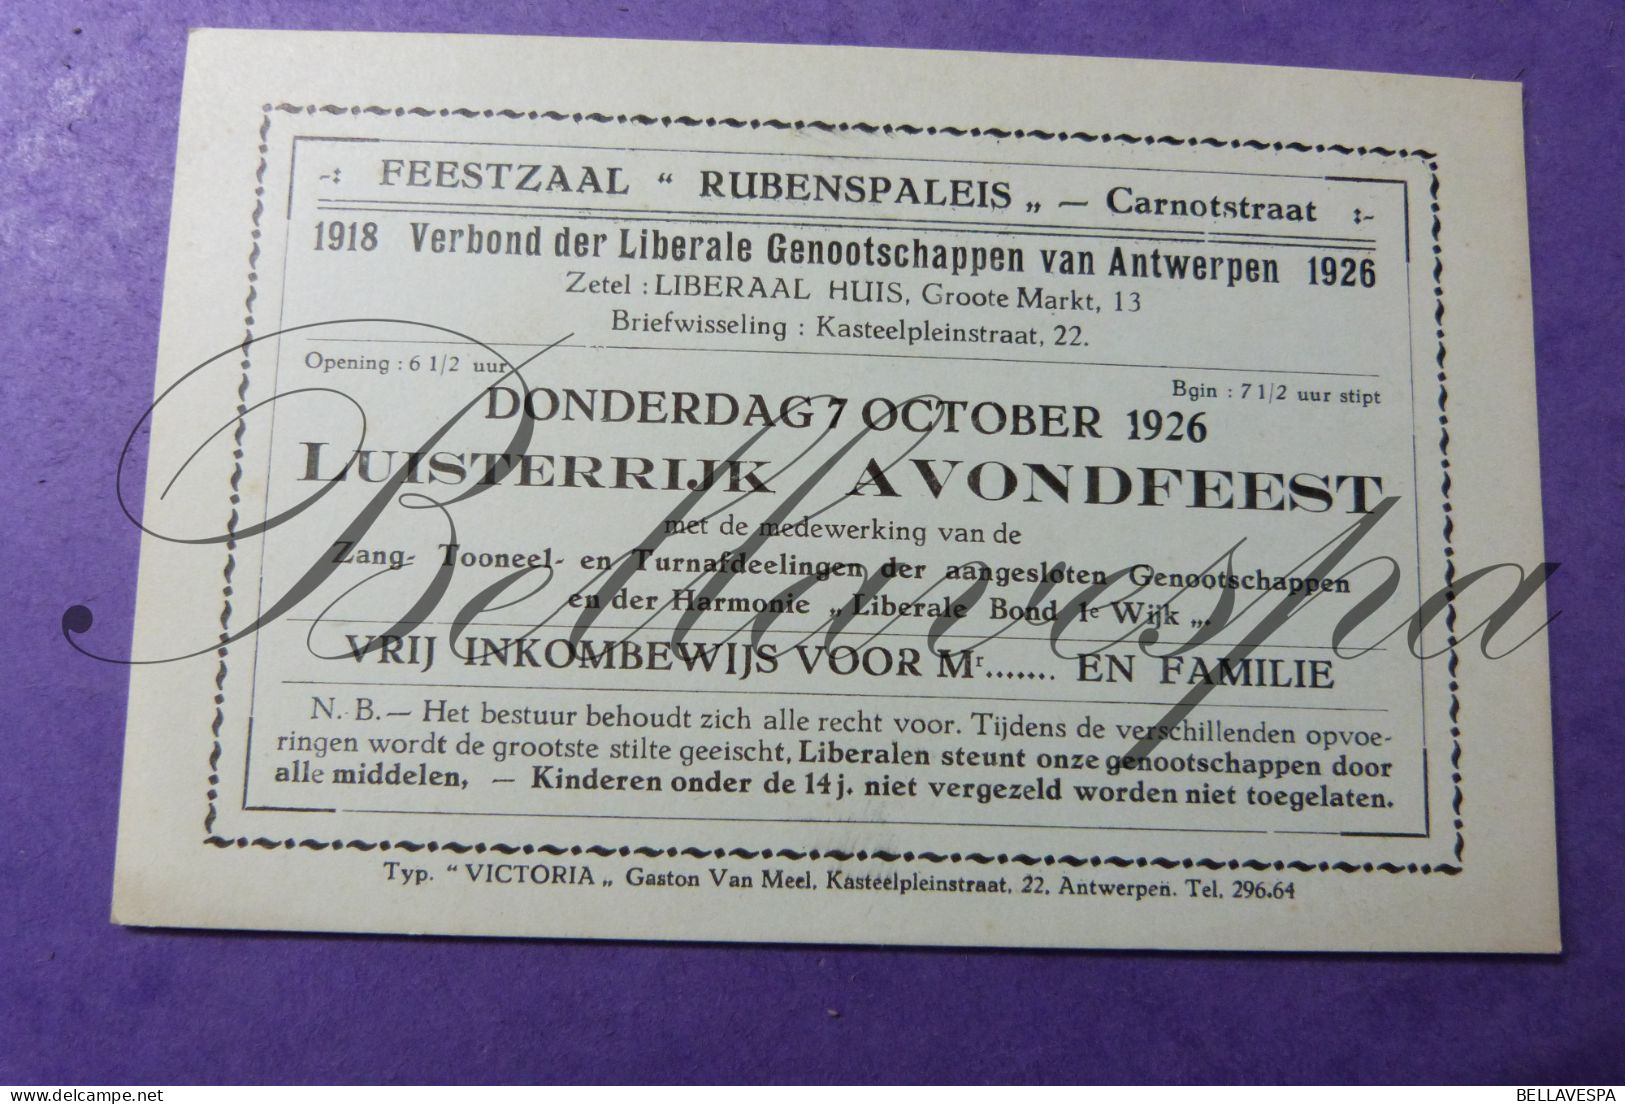 Feestzaal Rubenspaleis Carnotstr Antwerpen Liberaal Liberale Genootschap 1926 Avondfeest Harmonie Liberale Bond Ie Wijk - Tickets D'entrée